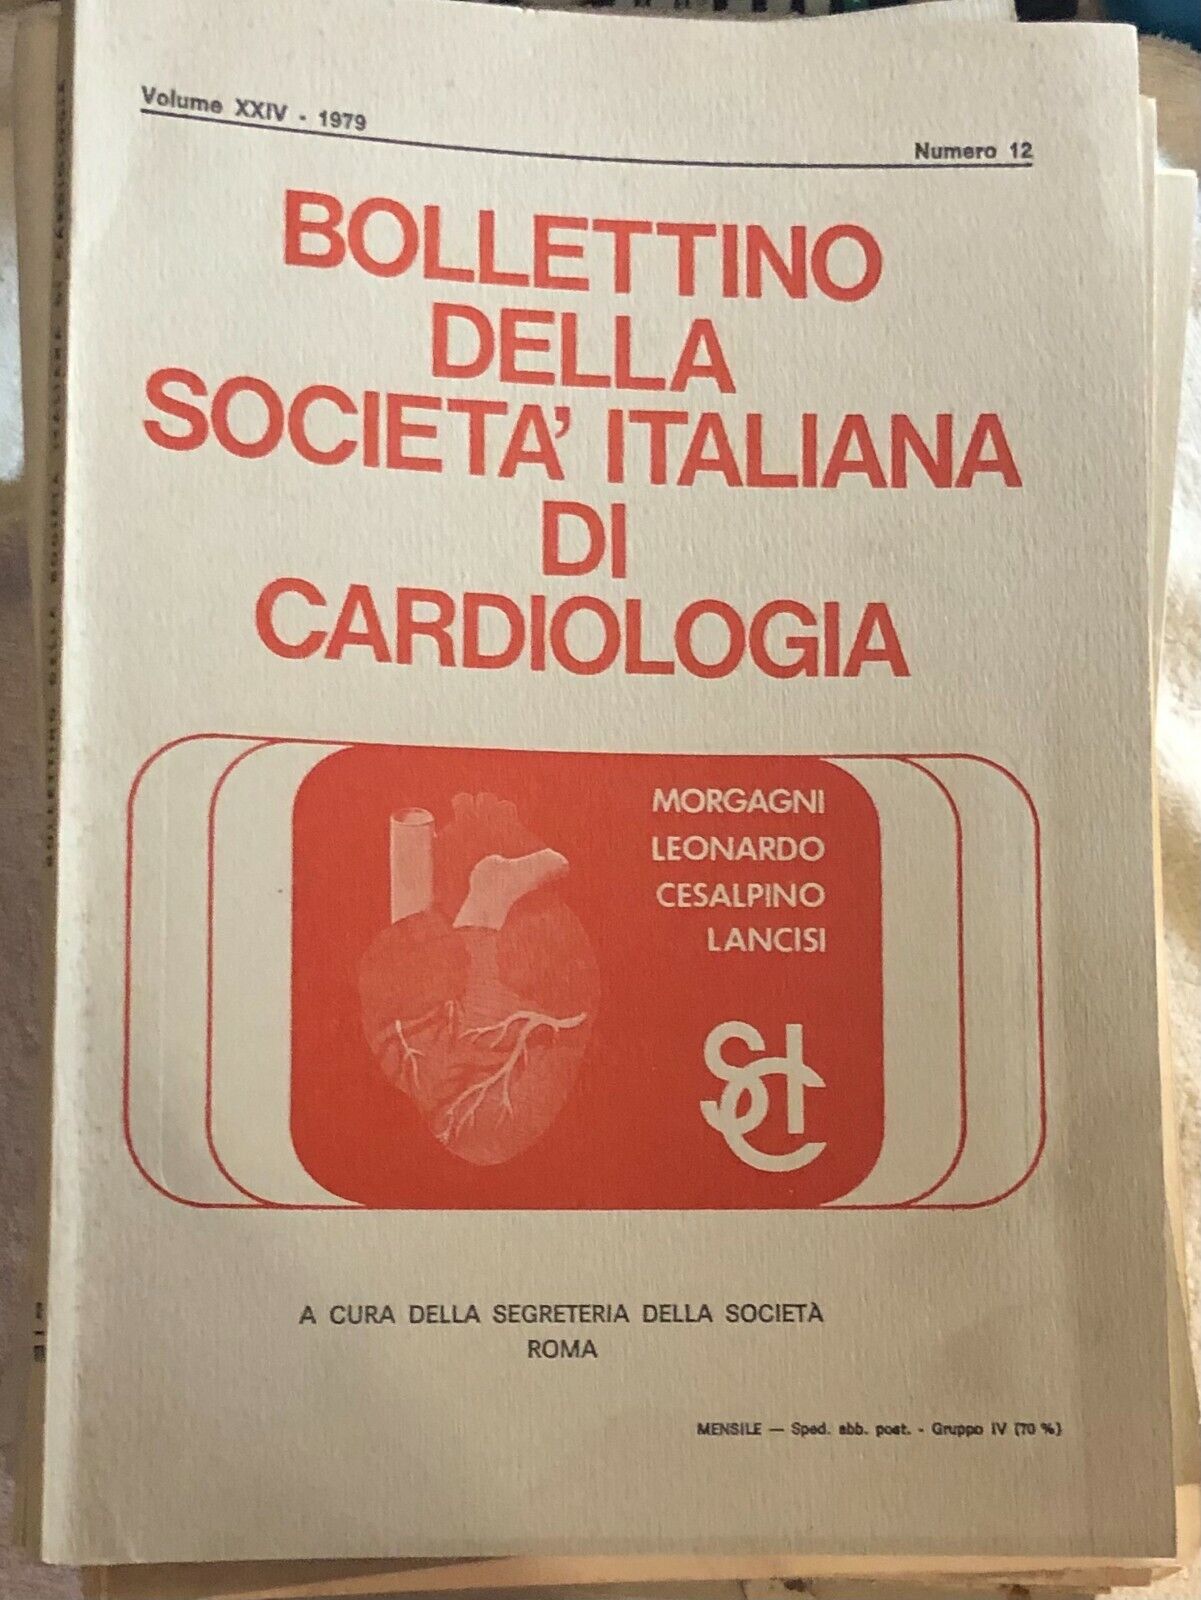  Bollettino della societ? italiana di cardiologia 53 numeri di Aa.vv.,  1975,  